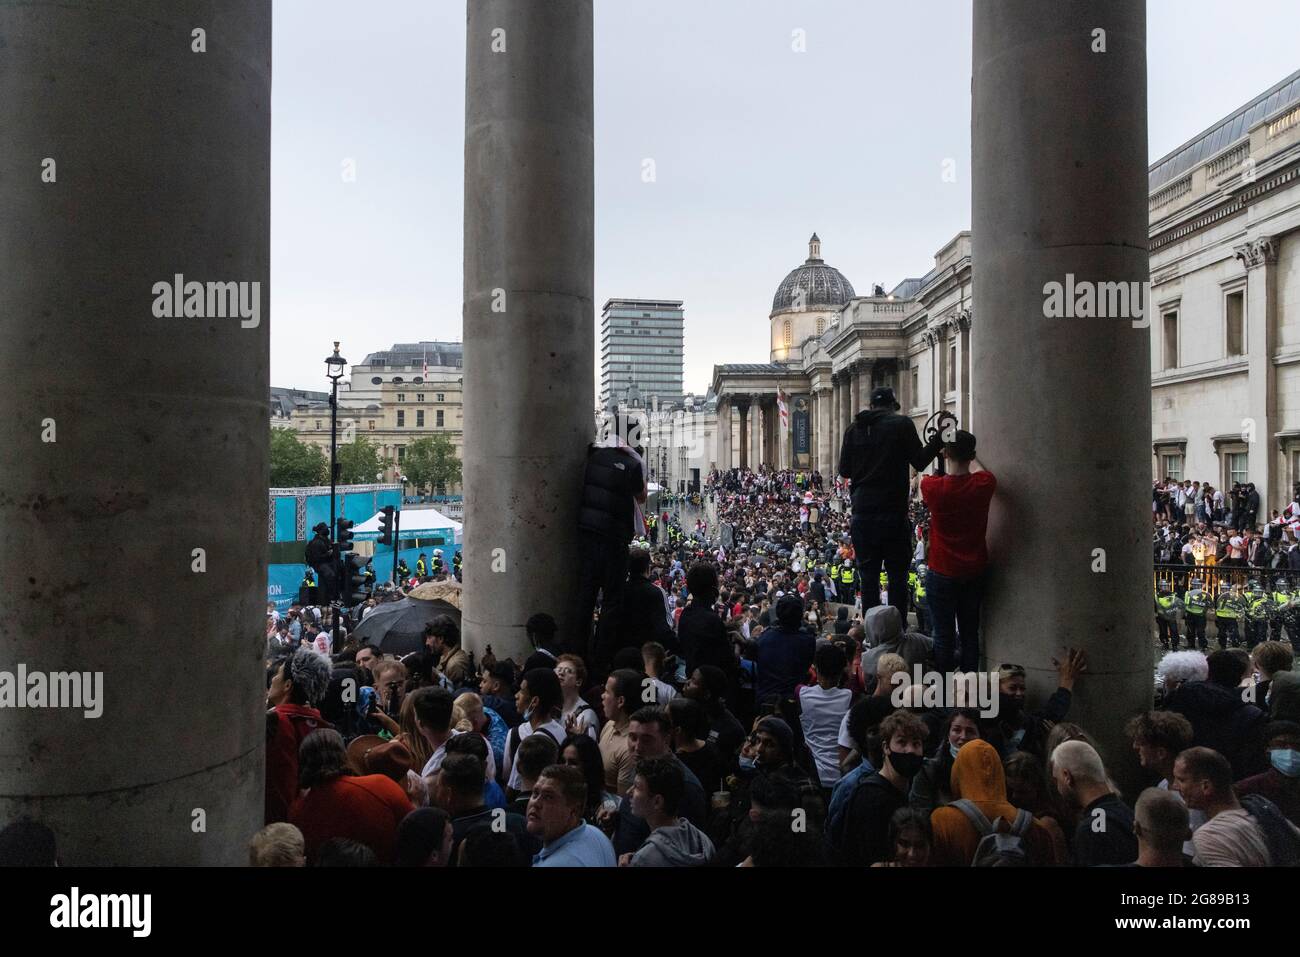 Eine Menge England-Fans außerhalb der Fanzone während des Finales der EM 2020 zwischen England und Italien, Trafalgar Square, London, 11. Juli 2021 Stockfoto